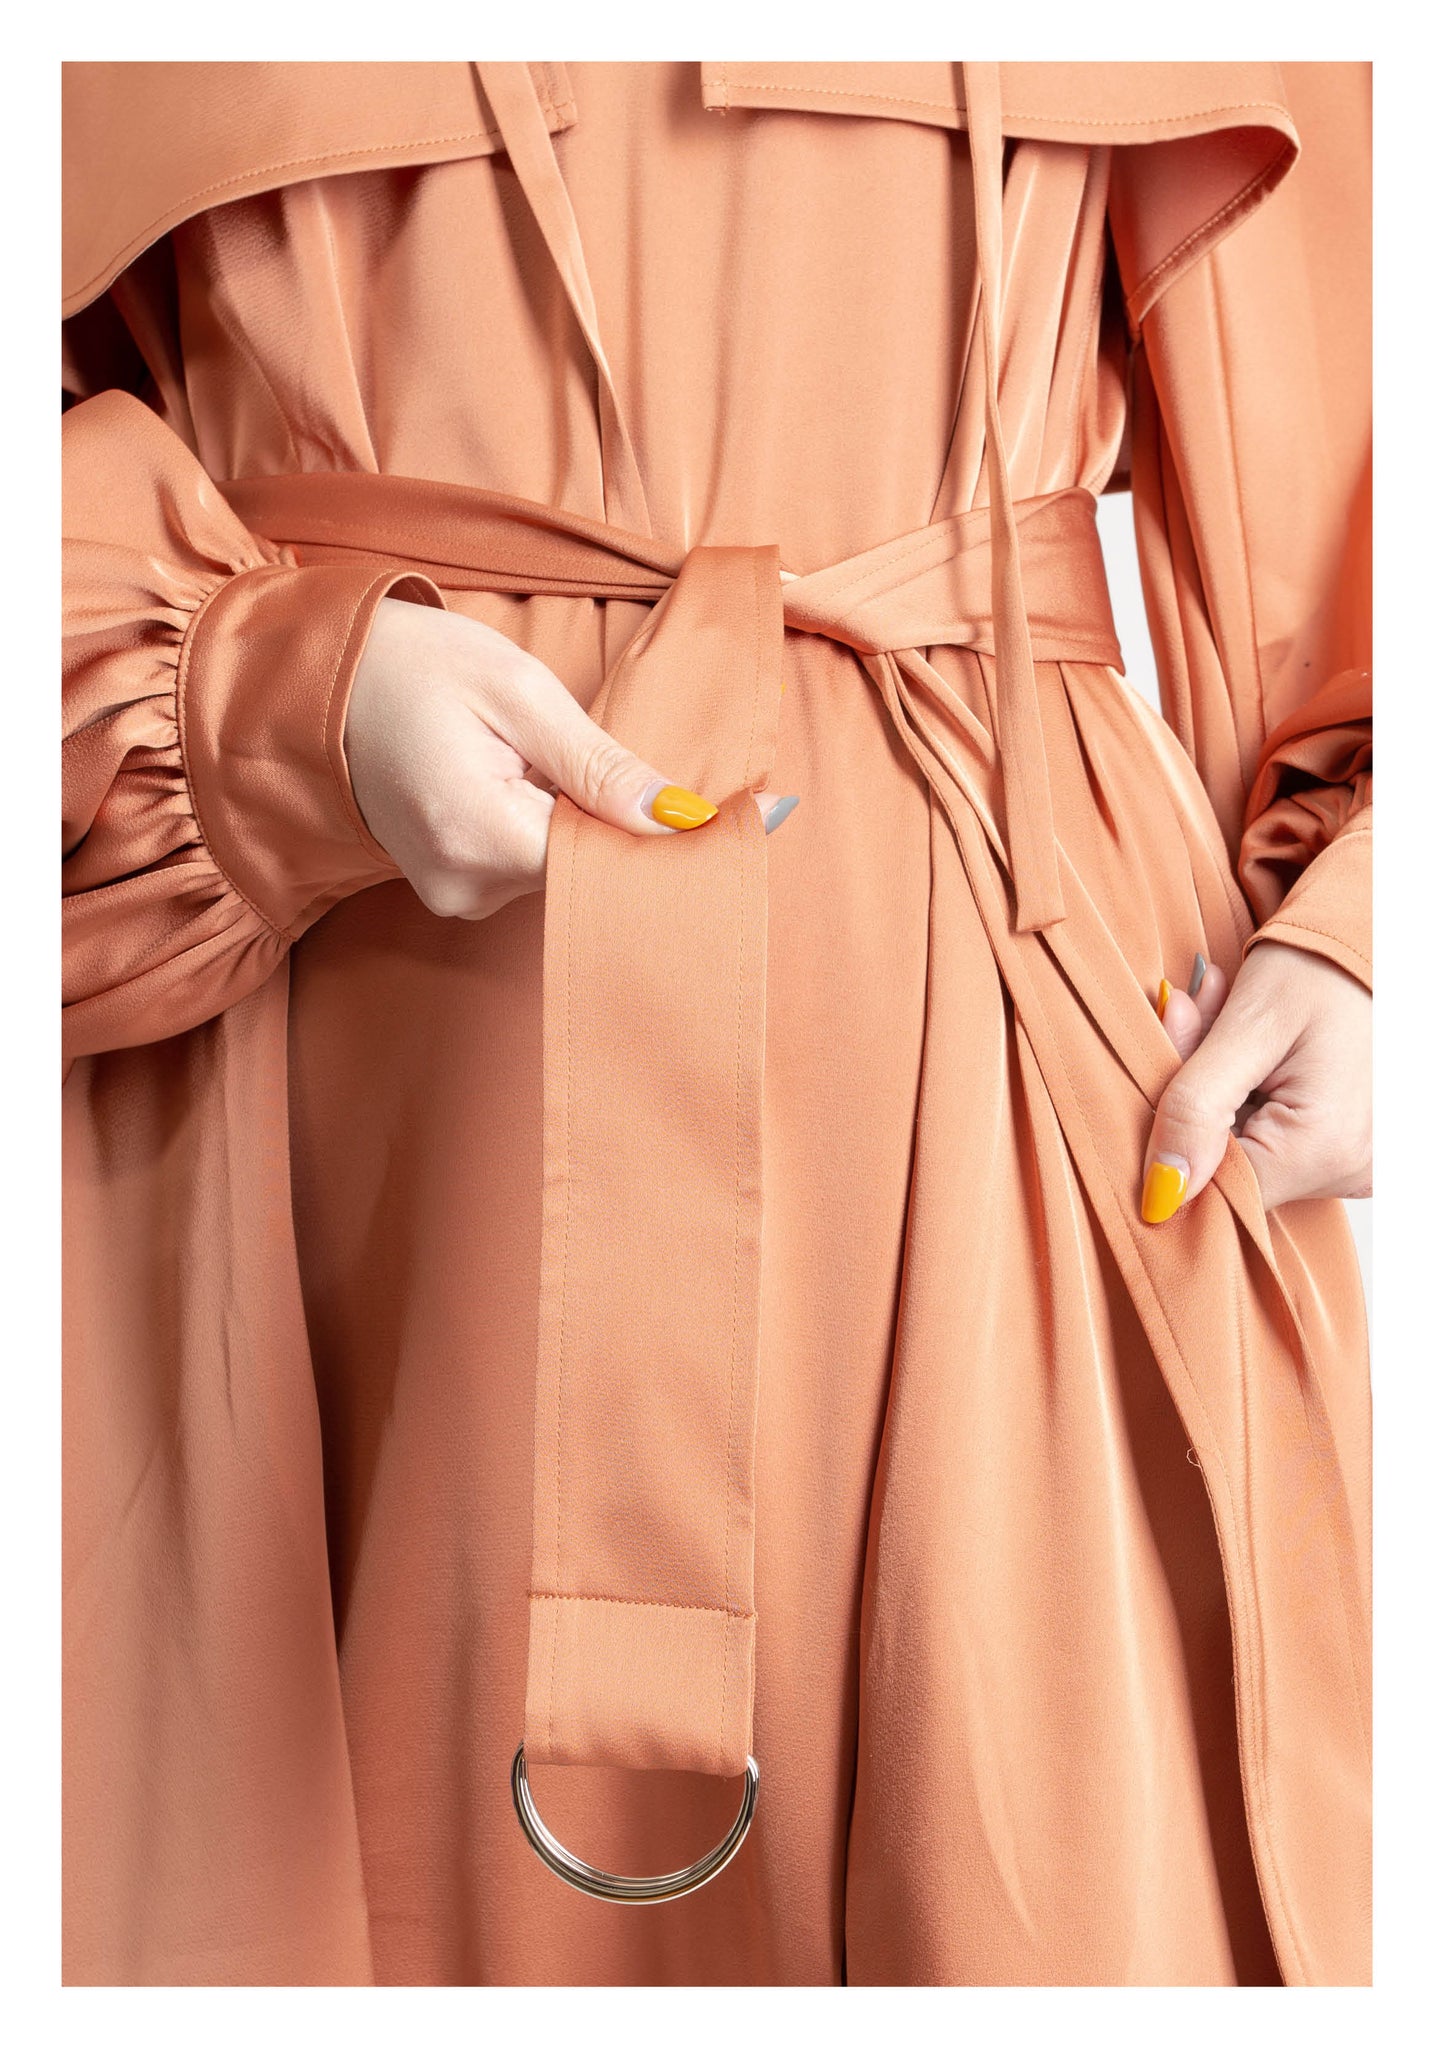 Empowerment Dress Golden Peach - whoami